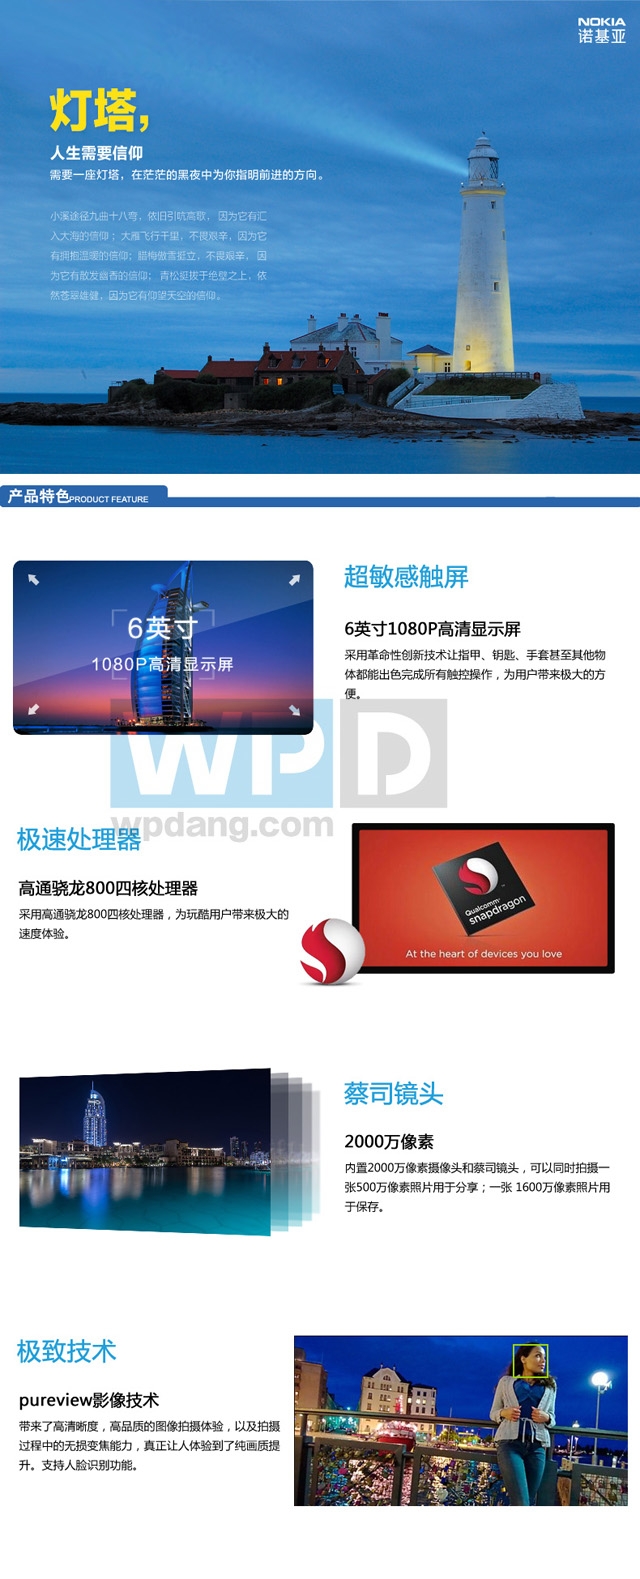 Lumia 1520 modelinin Çin tanıtım sayfası internete sızdırıldı